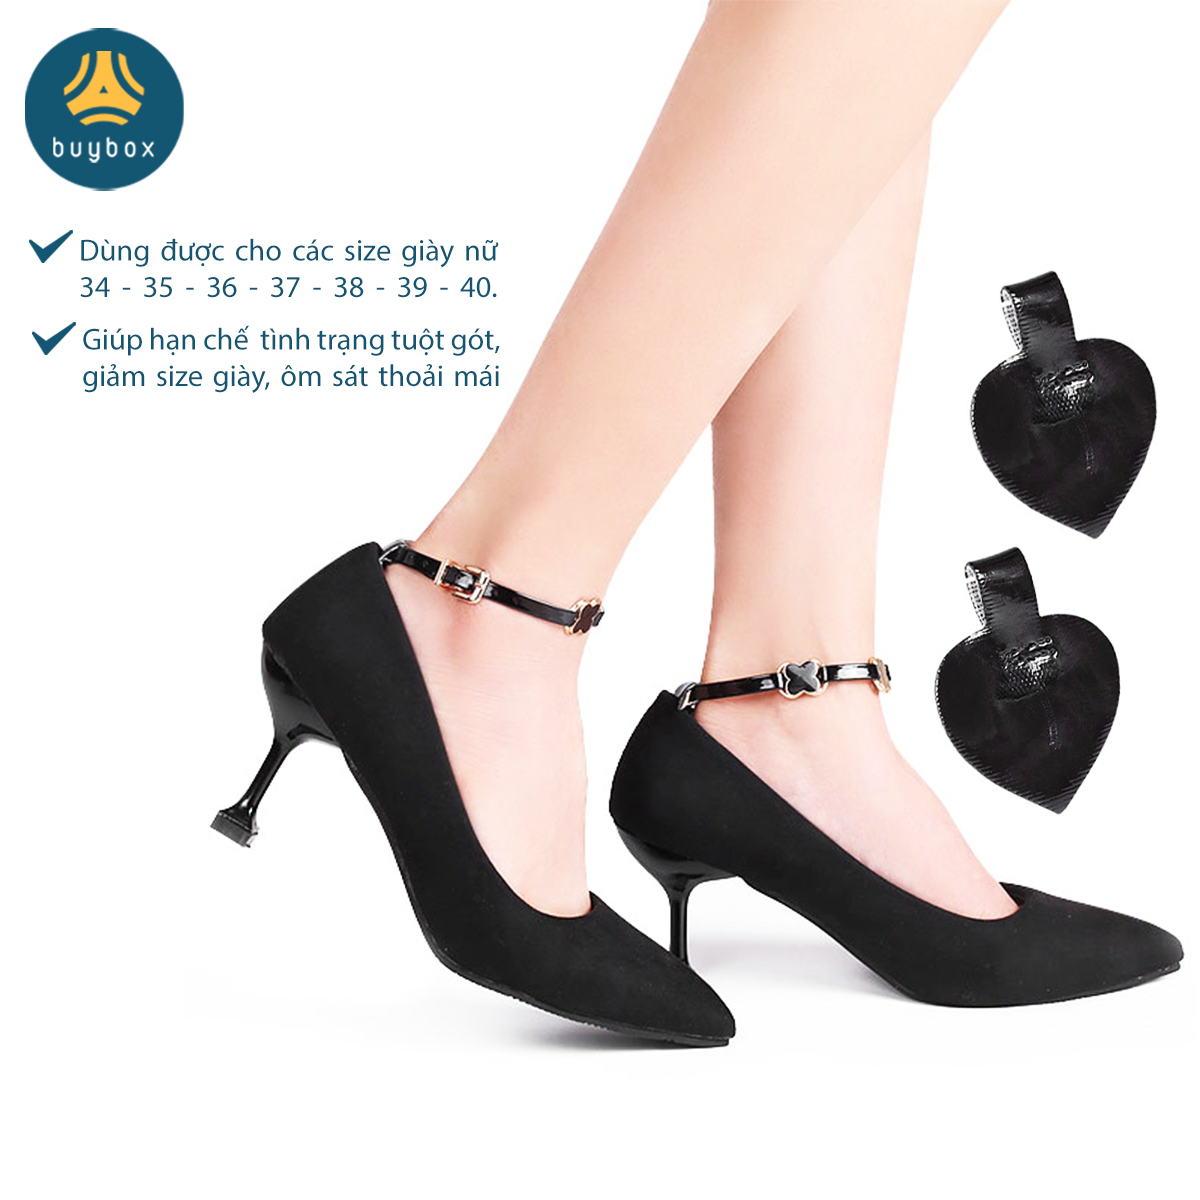 Quai giày chống tuột gót có phụ kiện, chất liệu da PU êm chân, dùng khi mang giày cao gót, không gây đau chân - BuyBox - BBPK343